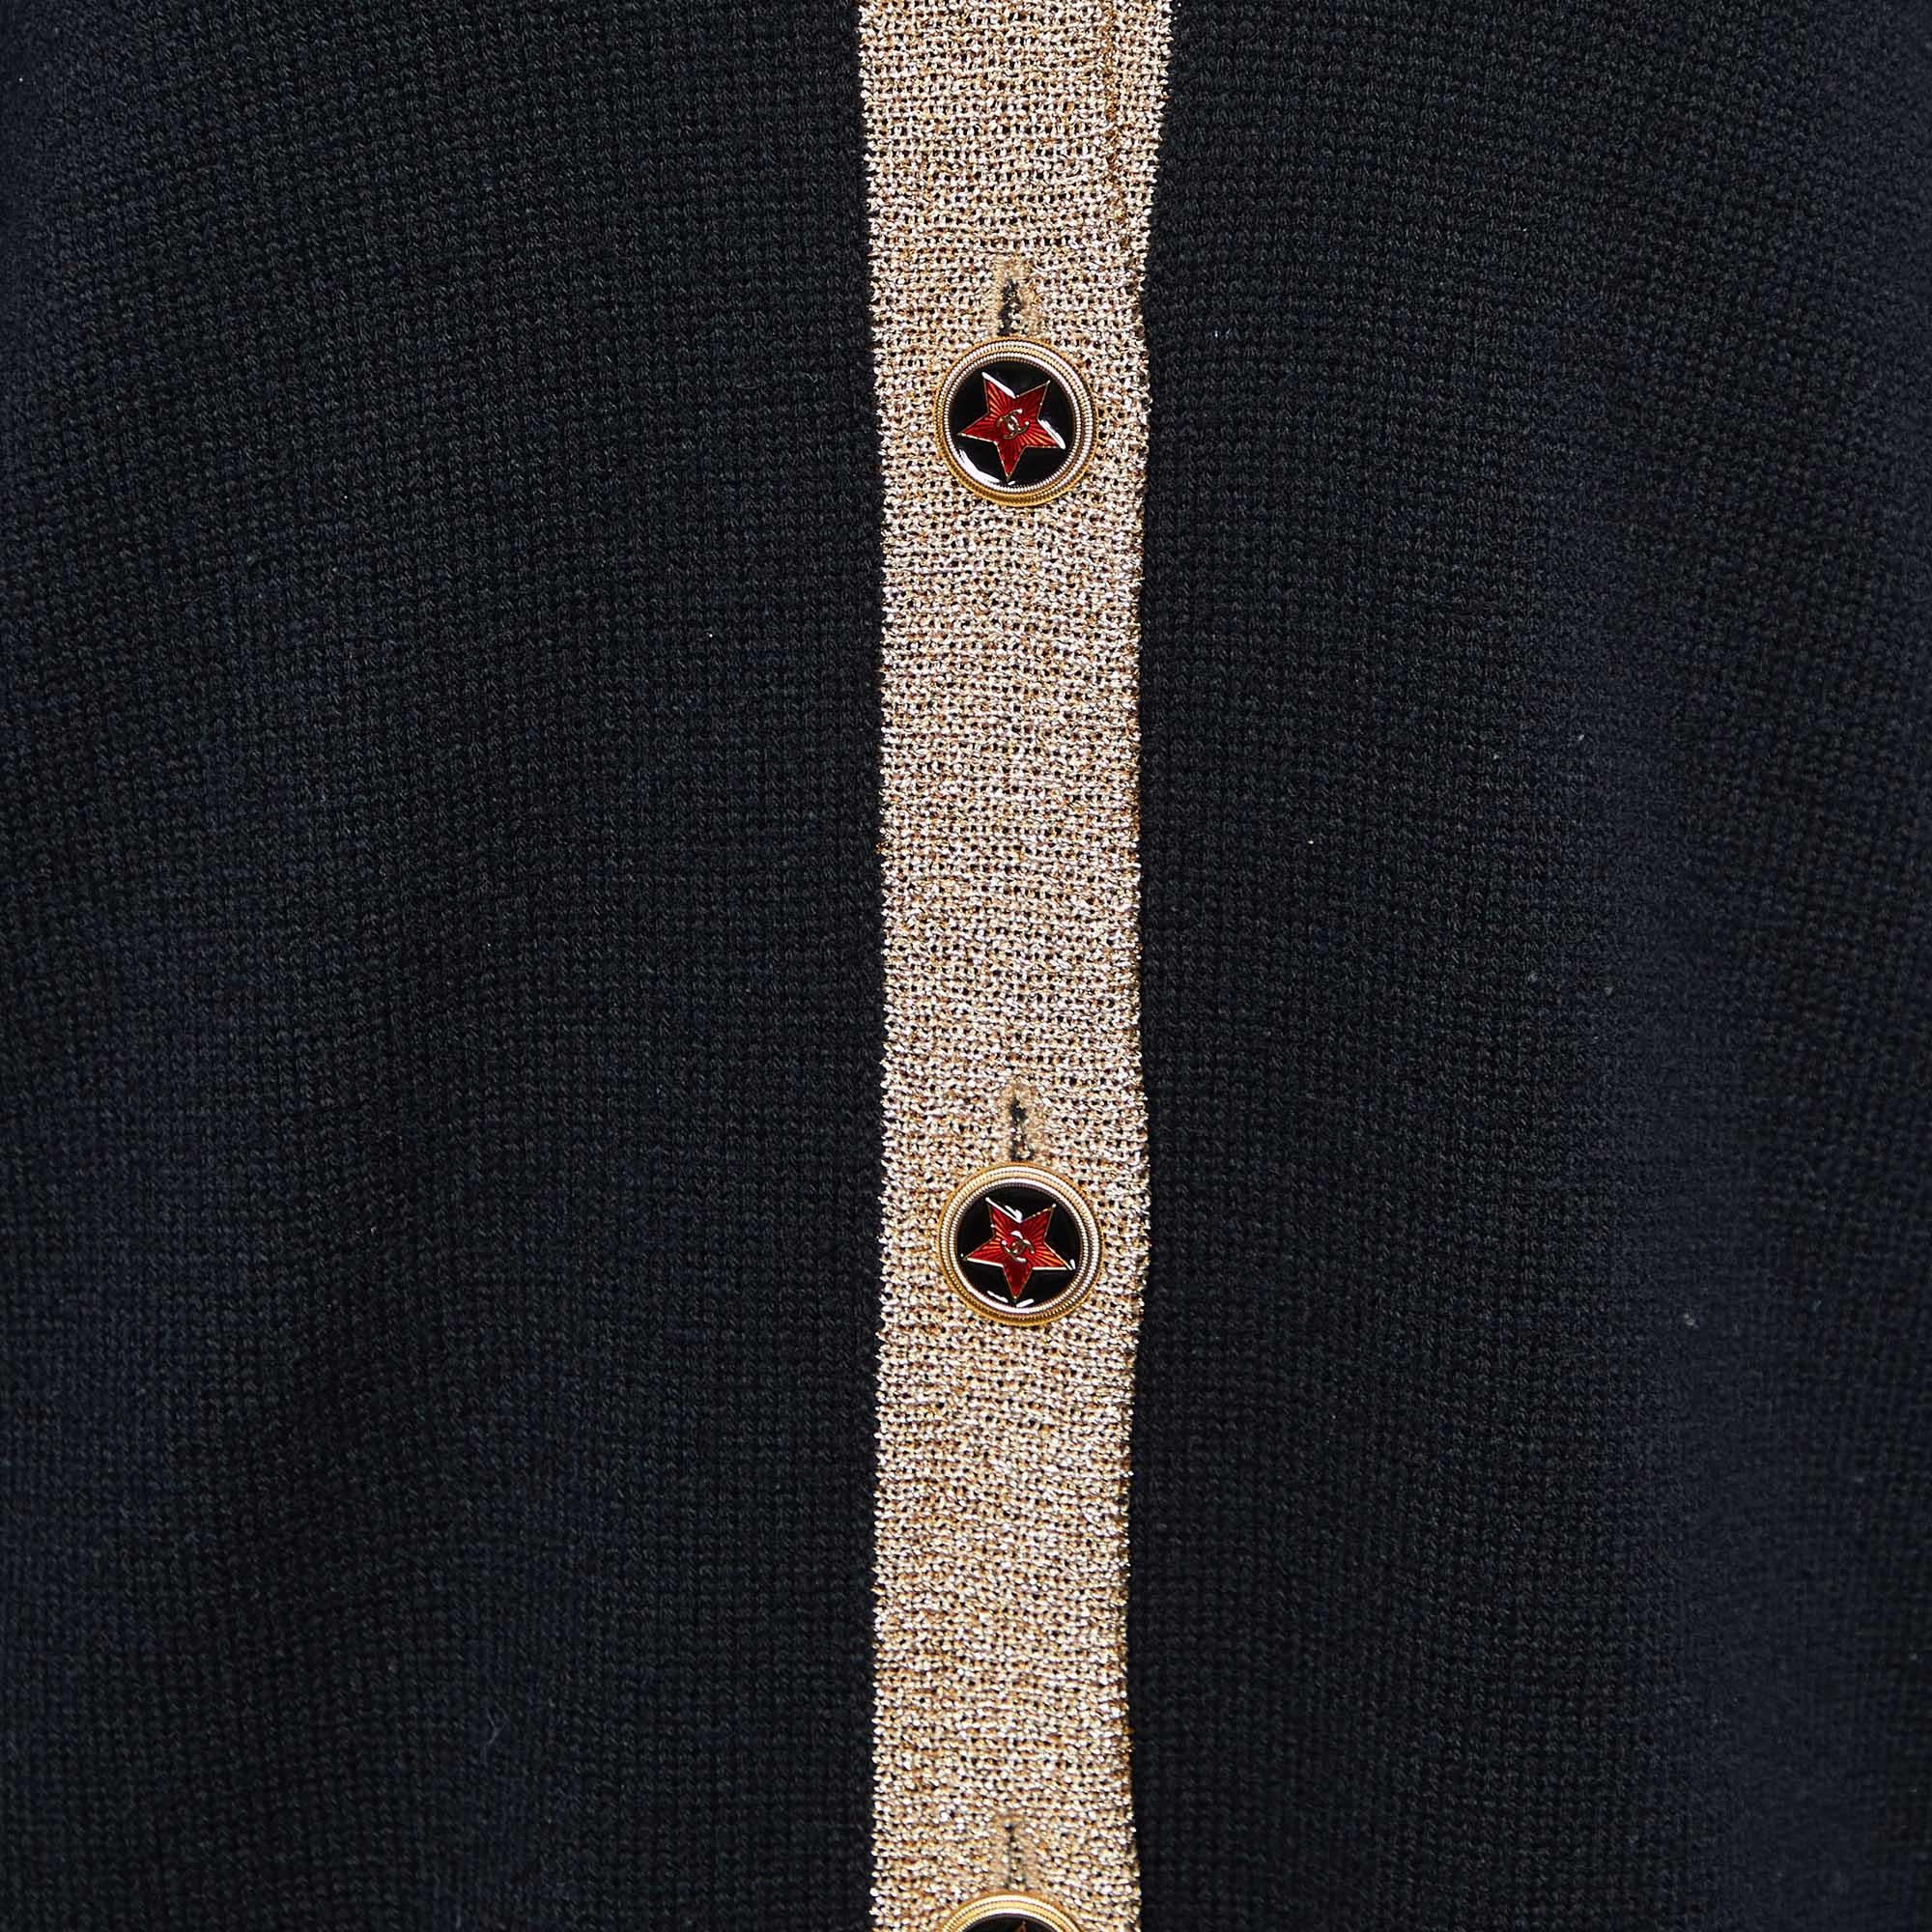 Chanel Black Cashmere & Lurex Knit Button Front Cardigan M For Sale 1